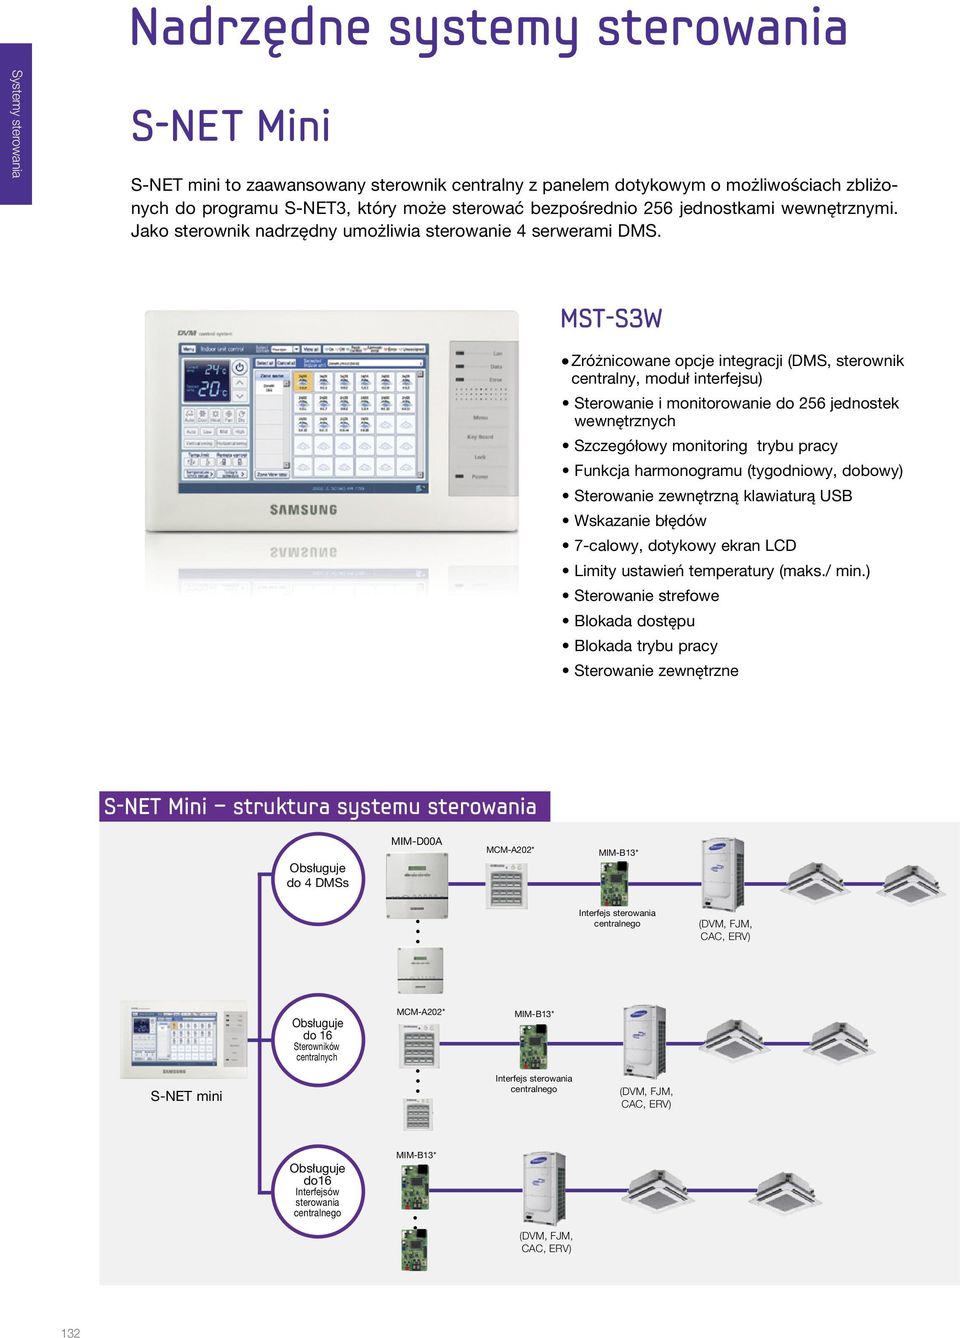 MST-S3W l Zróżnicowane opcje integracji (DMS, sterownik centralny, moduł interfejsu) Sterowanie i monitorowanie do 256 jednostek wewnętrznych Szczegółowy monitoring trybu pracy Funkcja harmonogramu